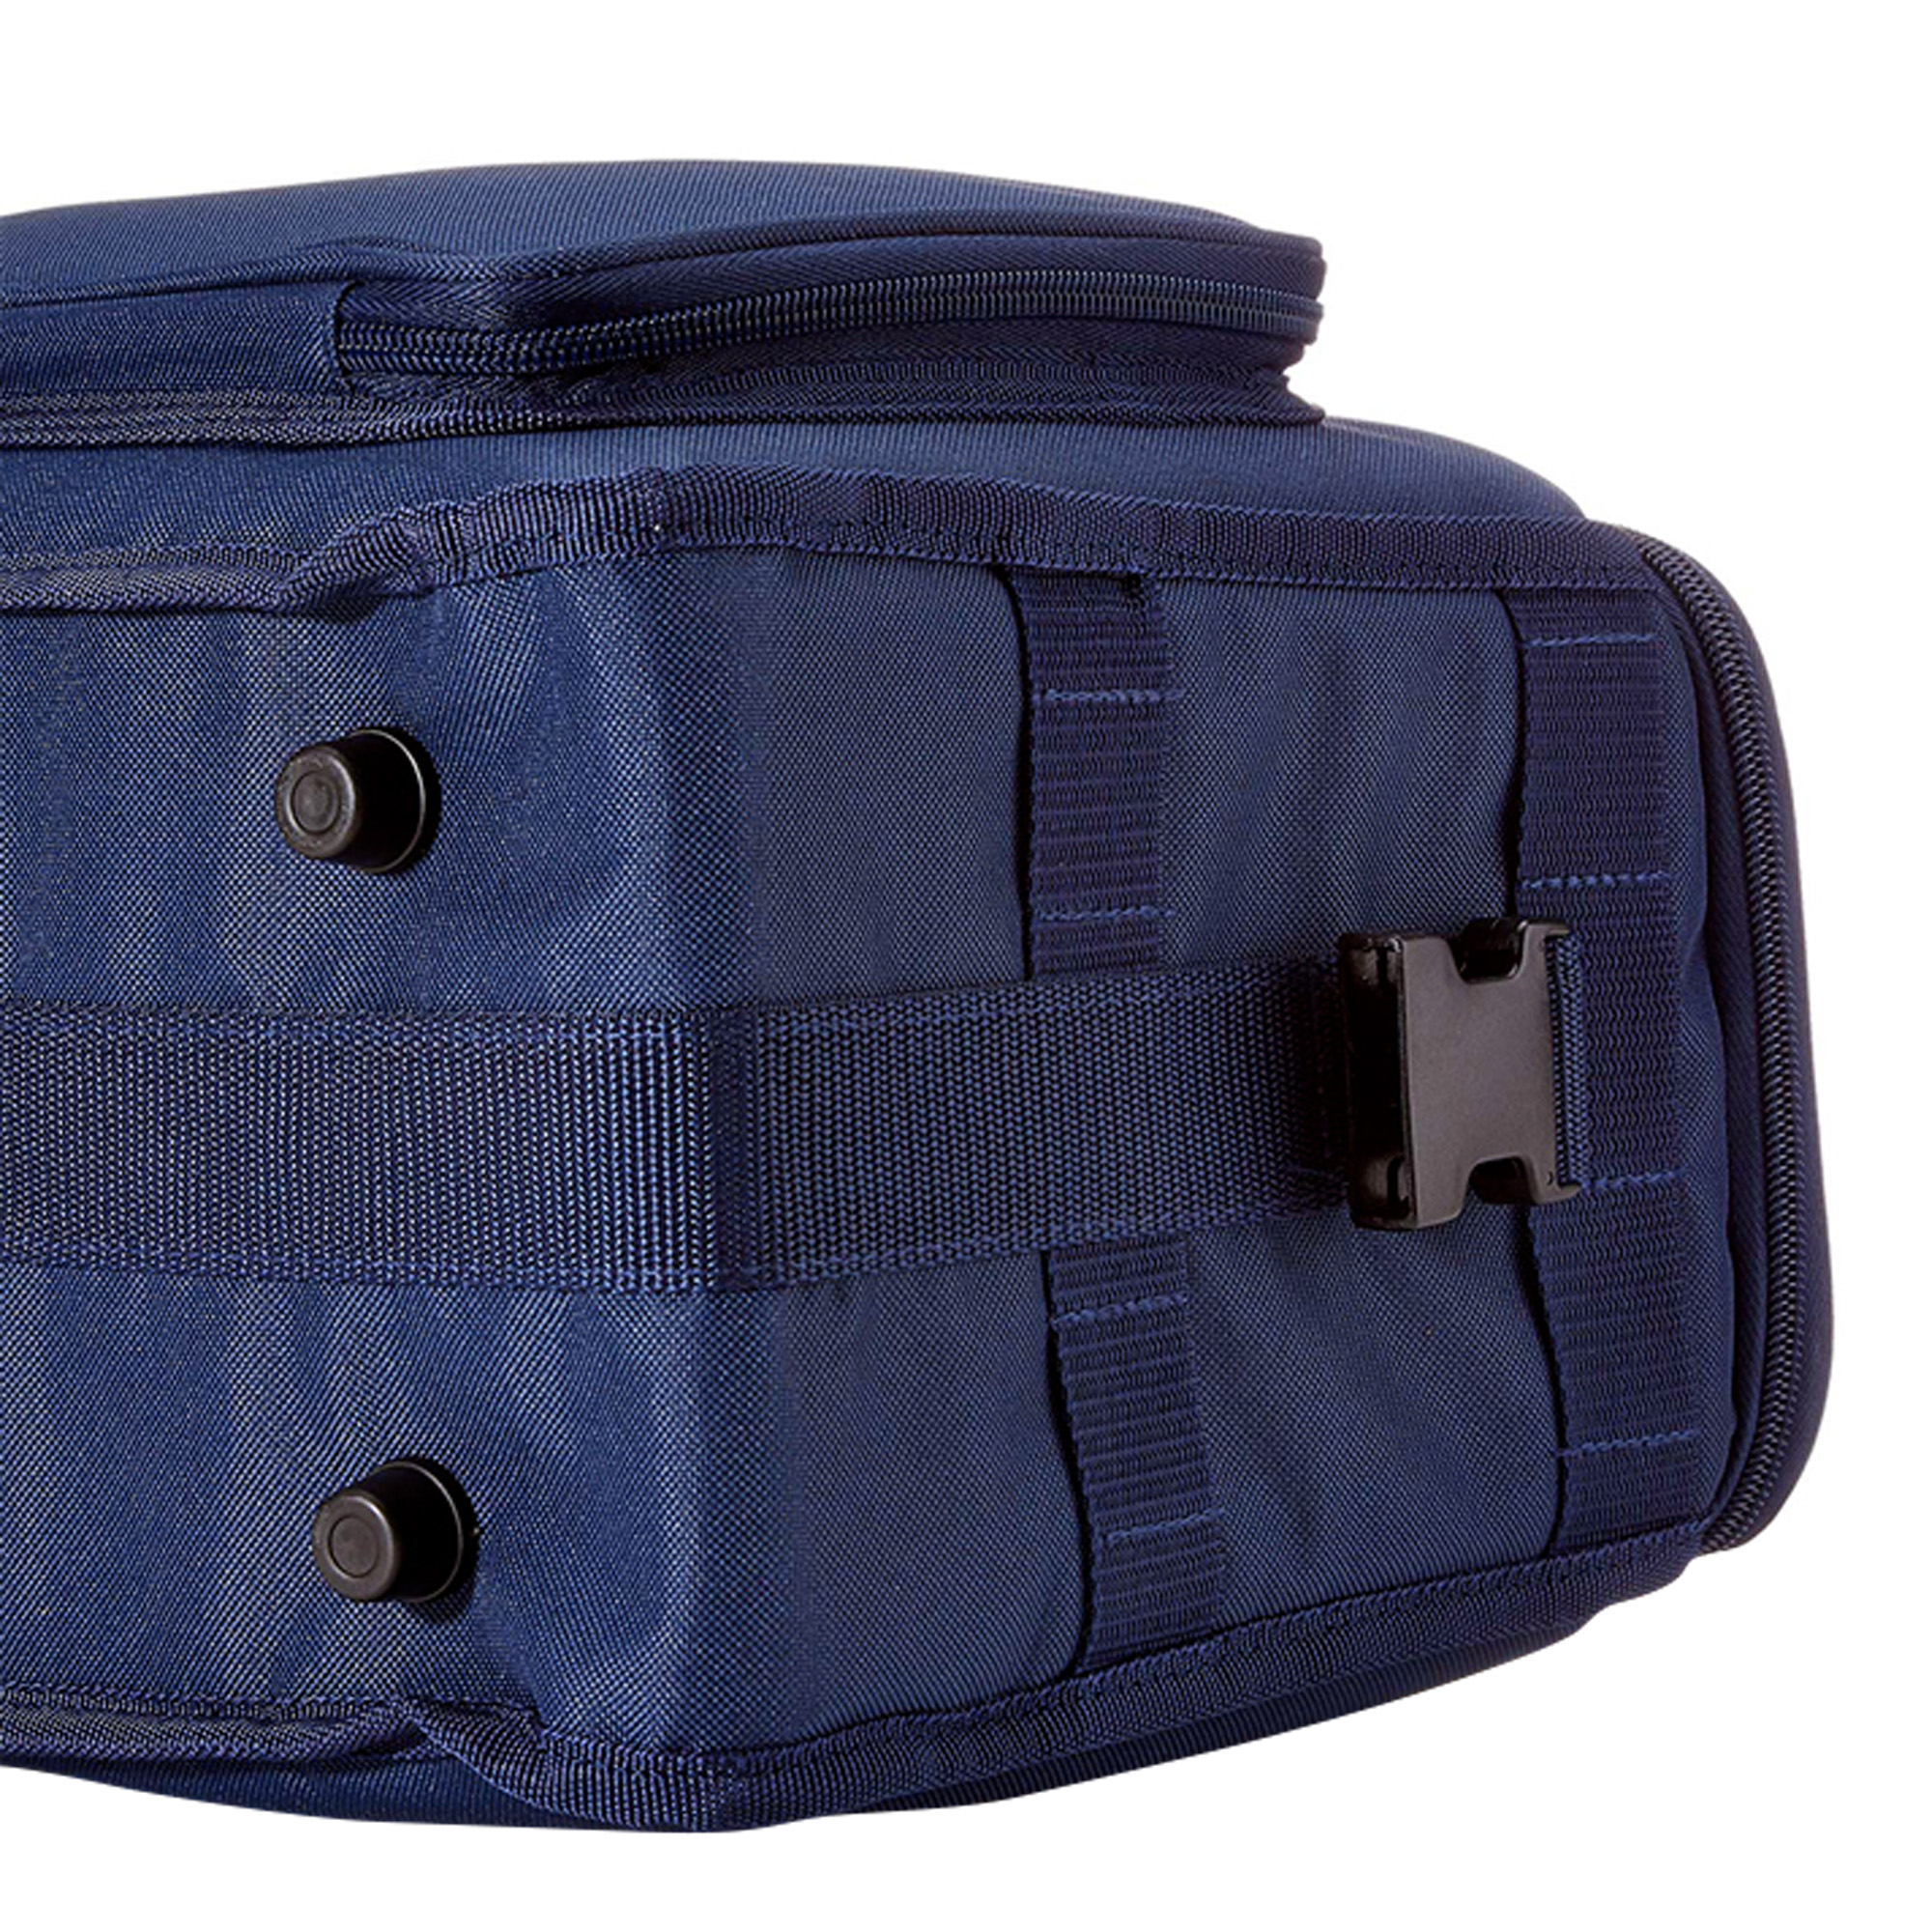 Blaue Profi-Tasche für Instrumente und Geräte